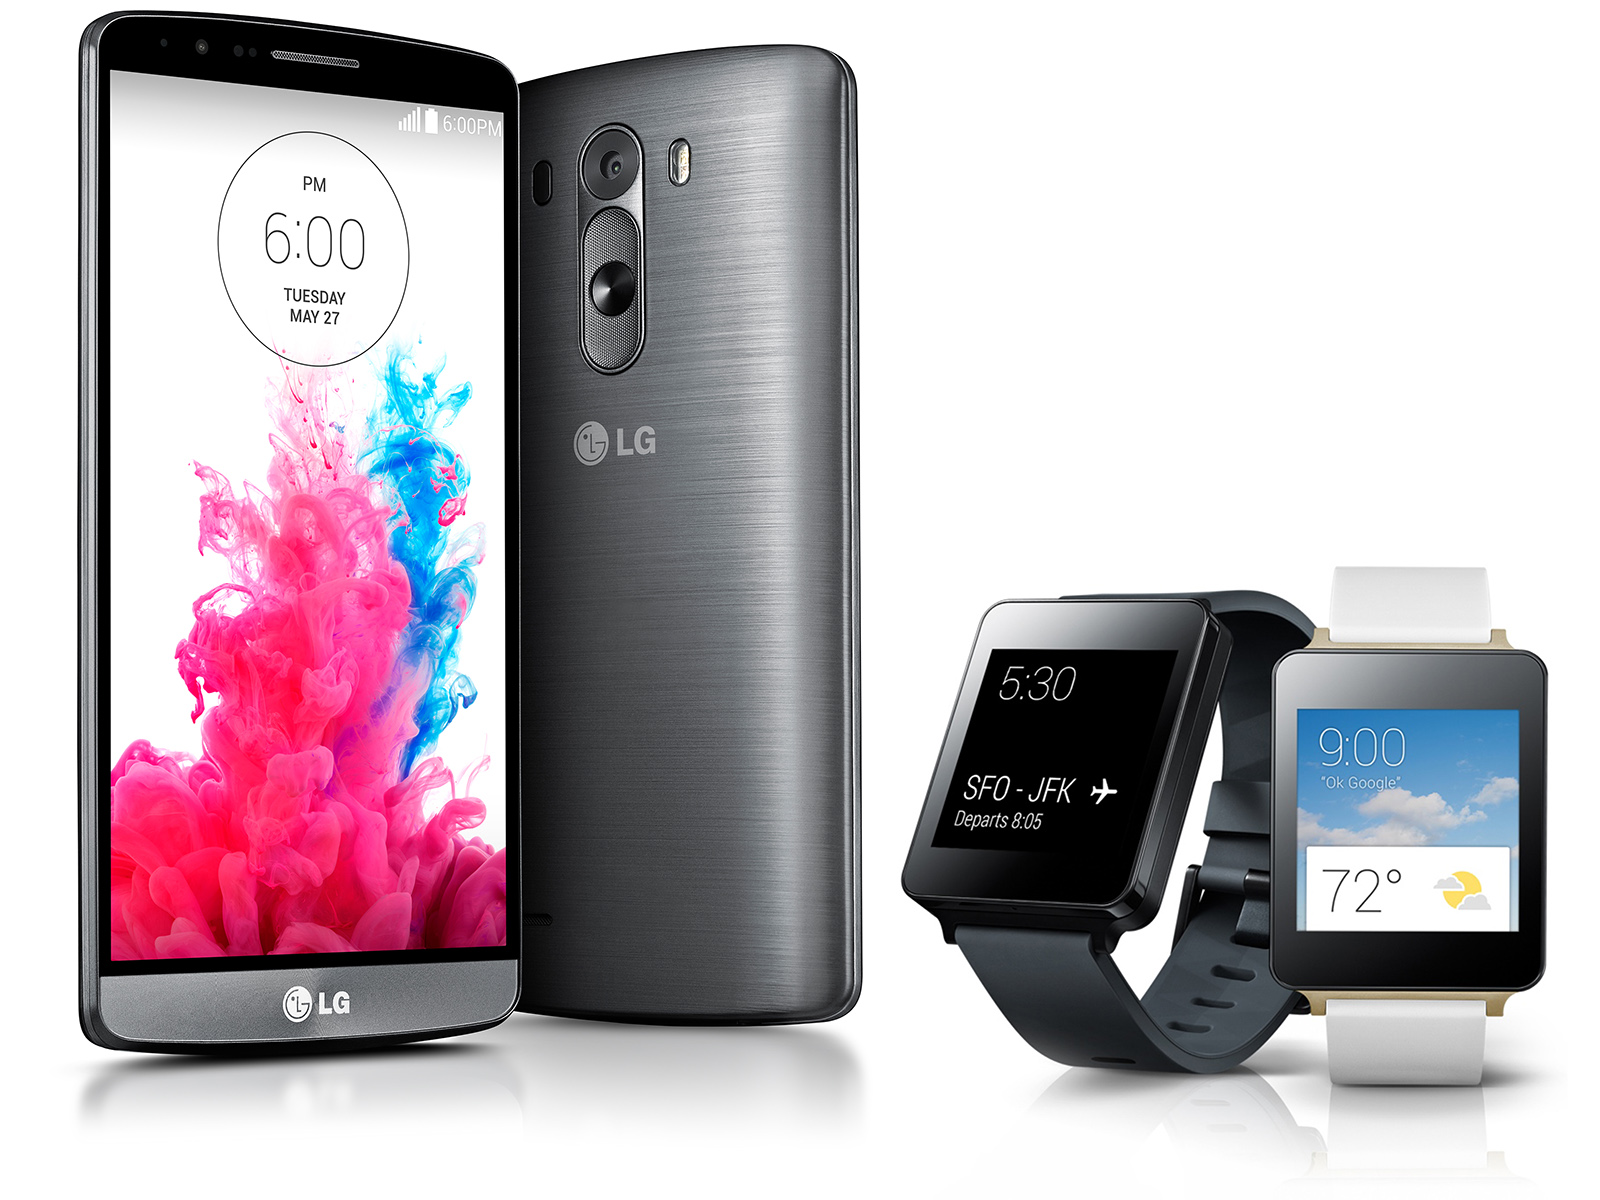 Kısa inceleme: LG G3 akıllı telefon ve LG G saat - Notebookcheck-tr.com